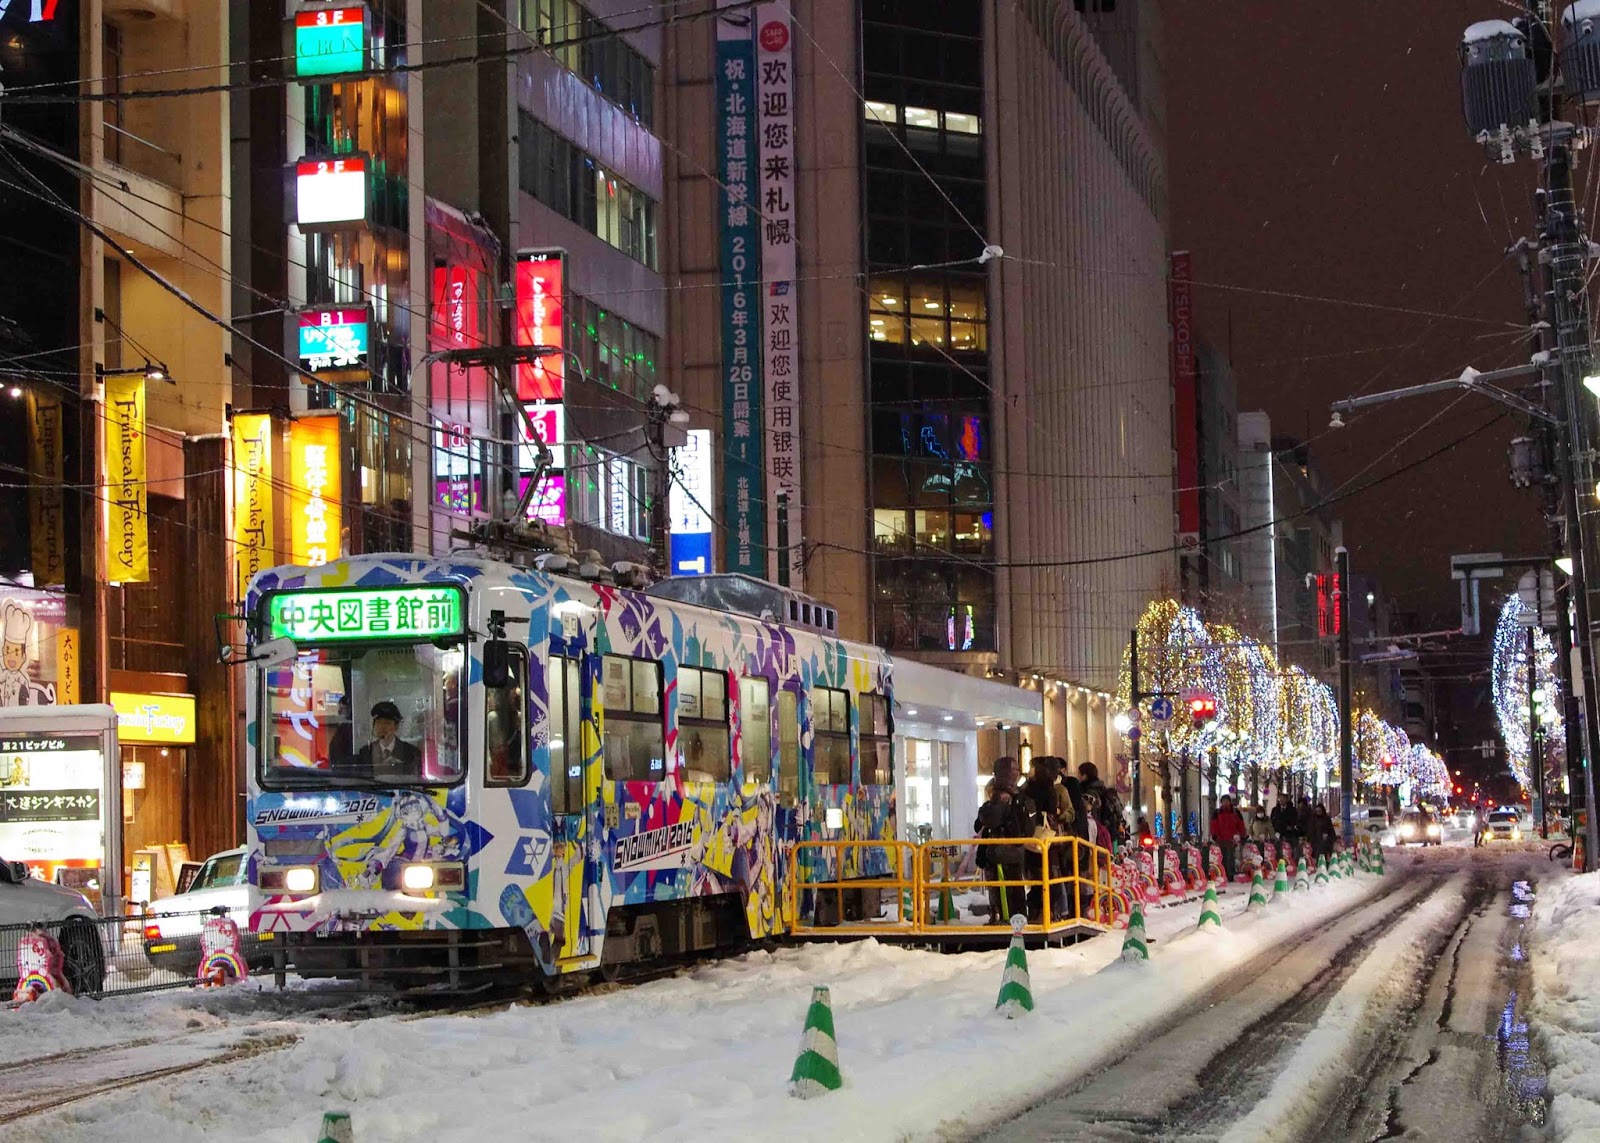 北海道を応援する Snow Miku 2016 初音ミク仕様の雪ミク市電が11月